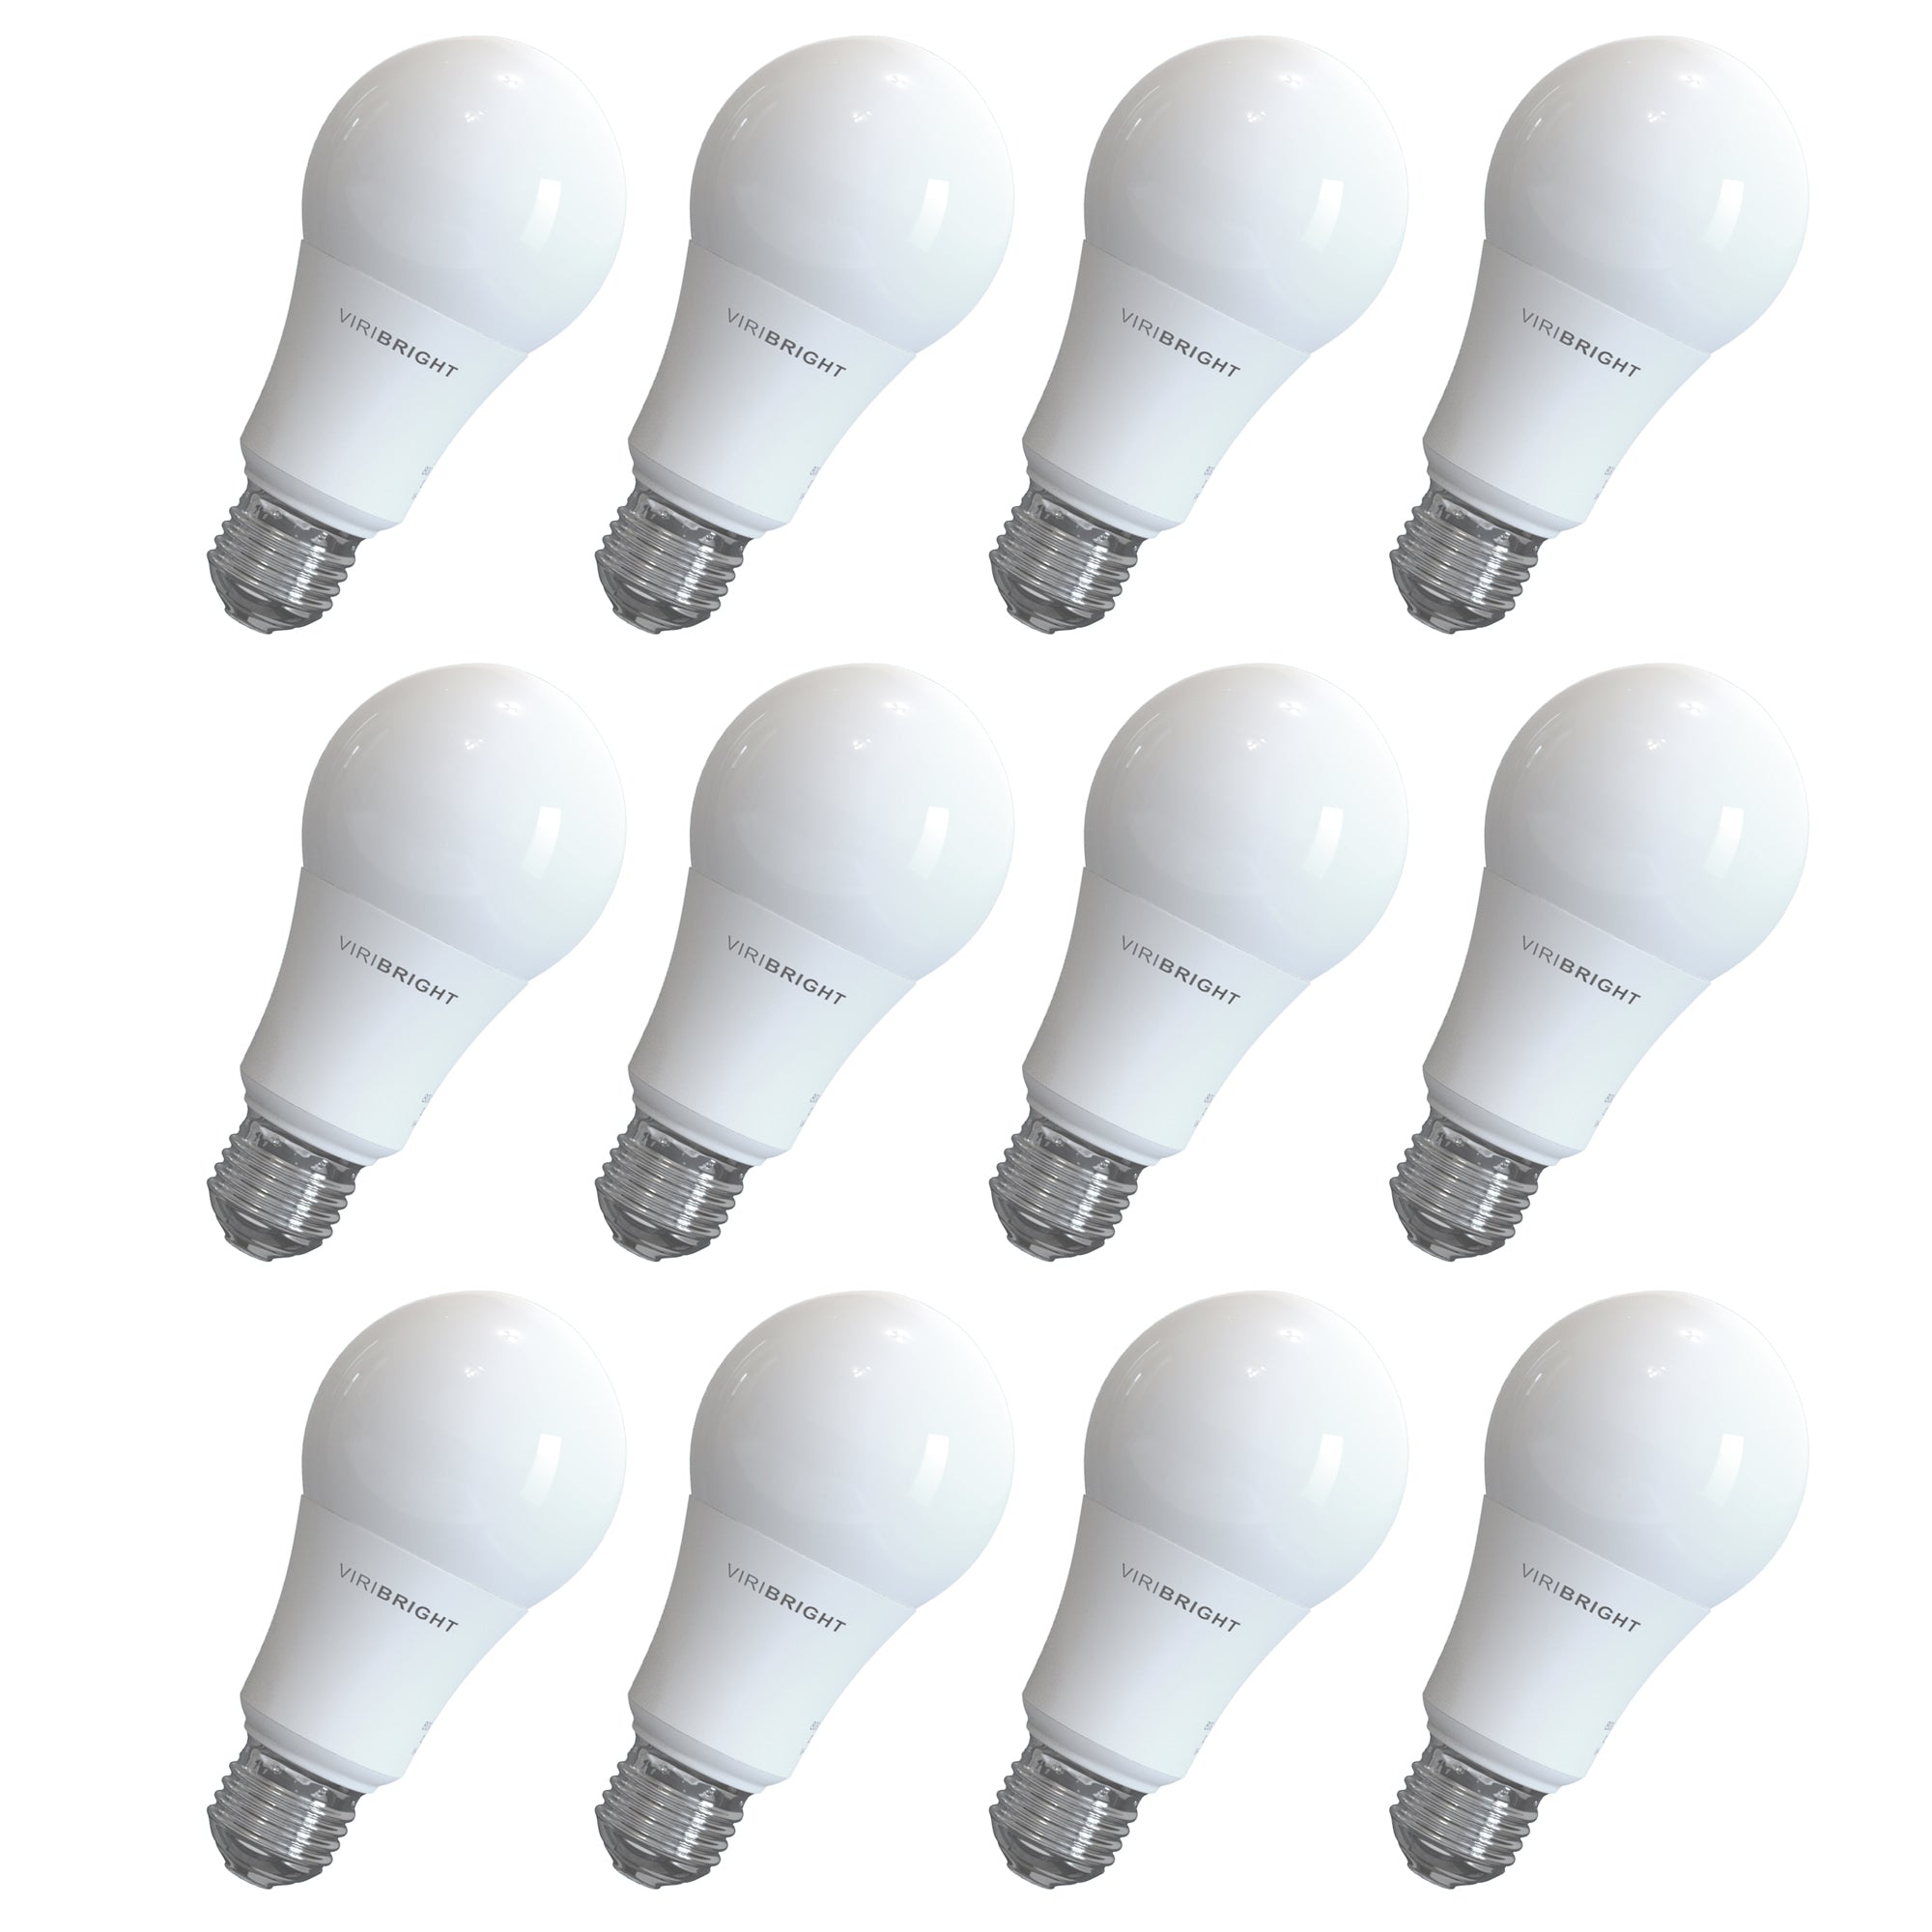 Versatile general-purpose light bulb